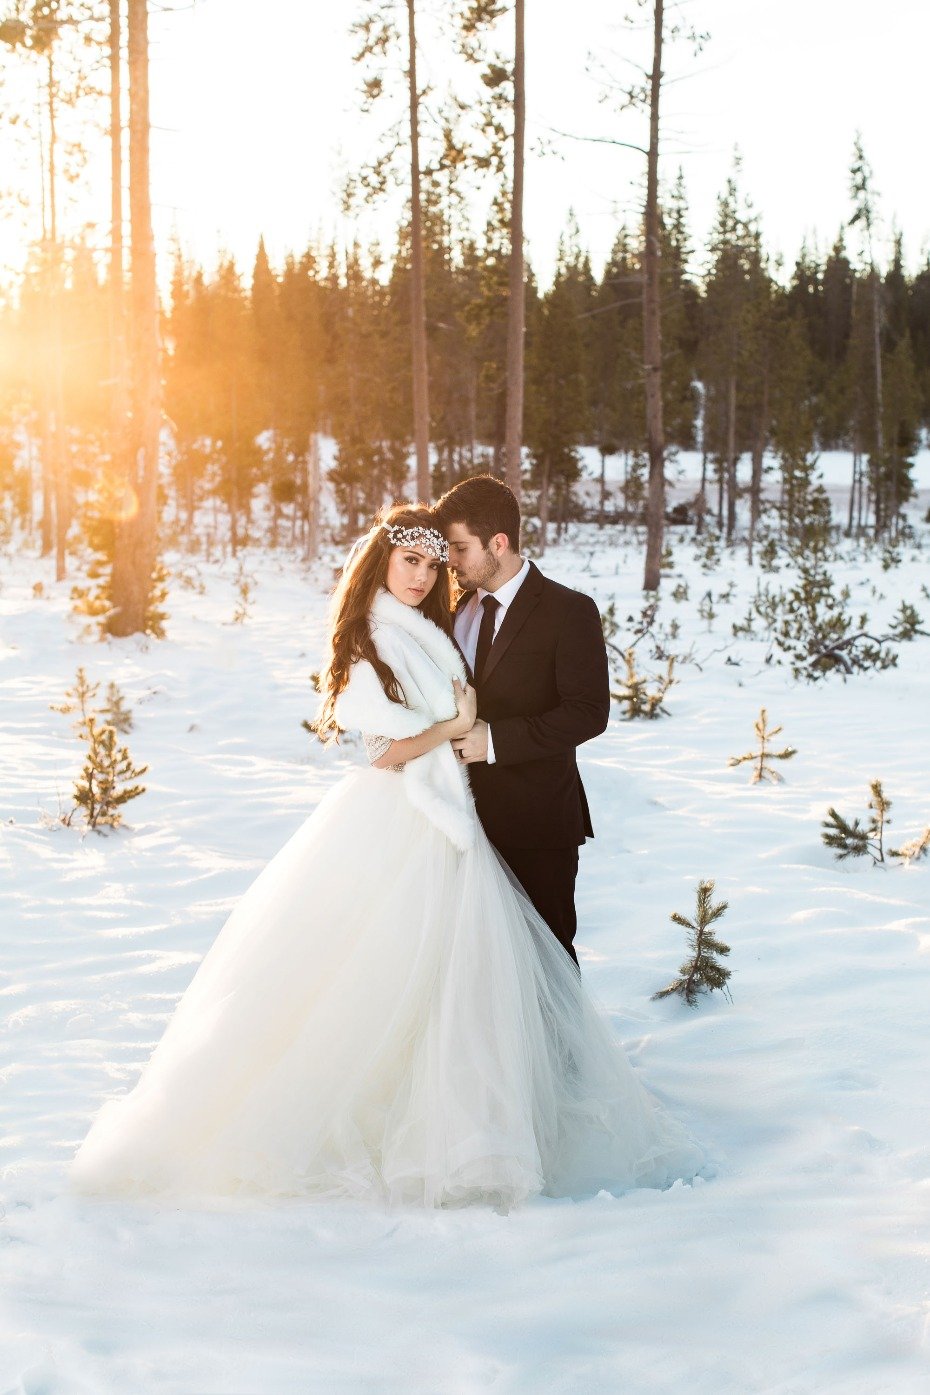 Glam winter wedding ideas. #snowywedding #maggiesottero